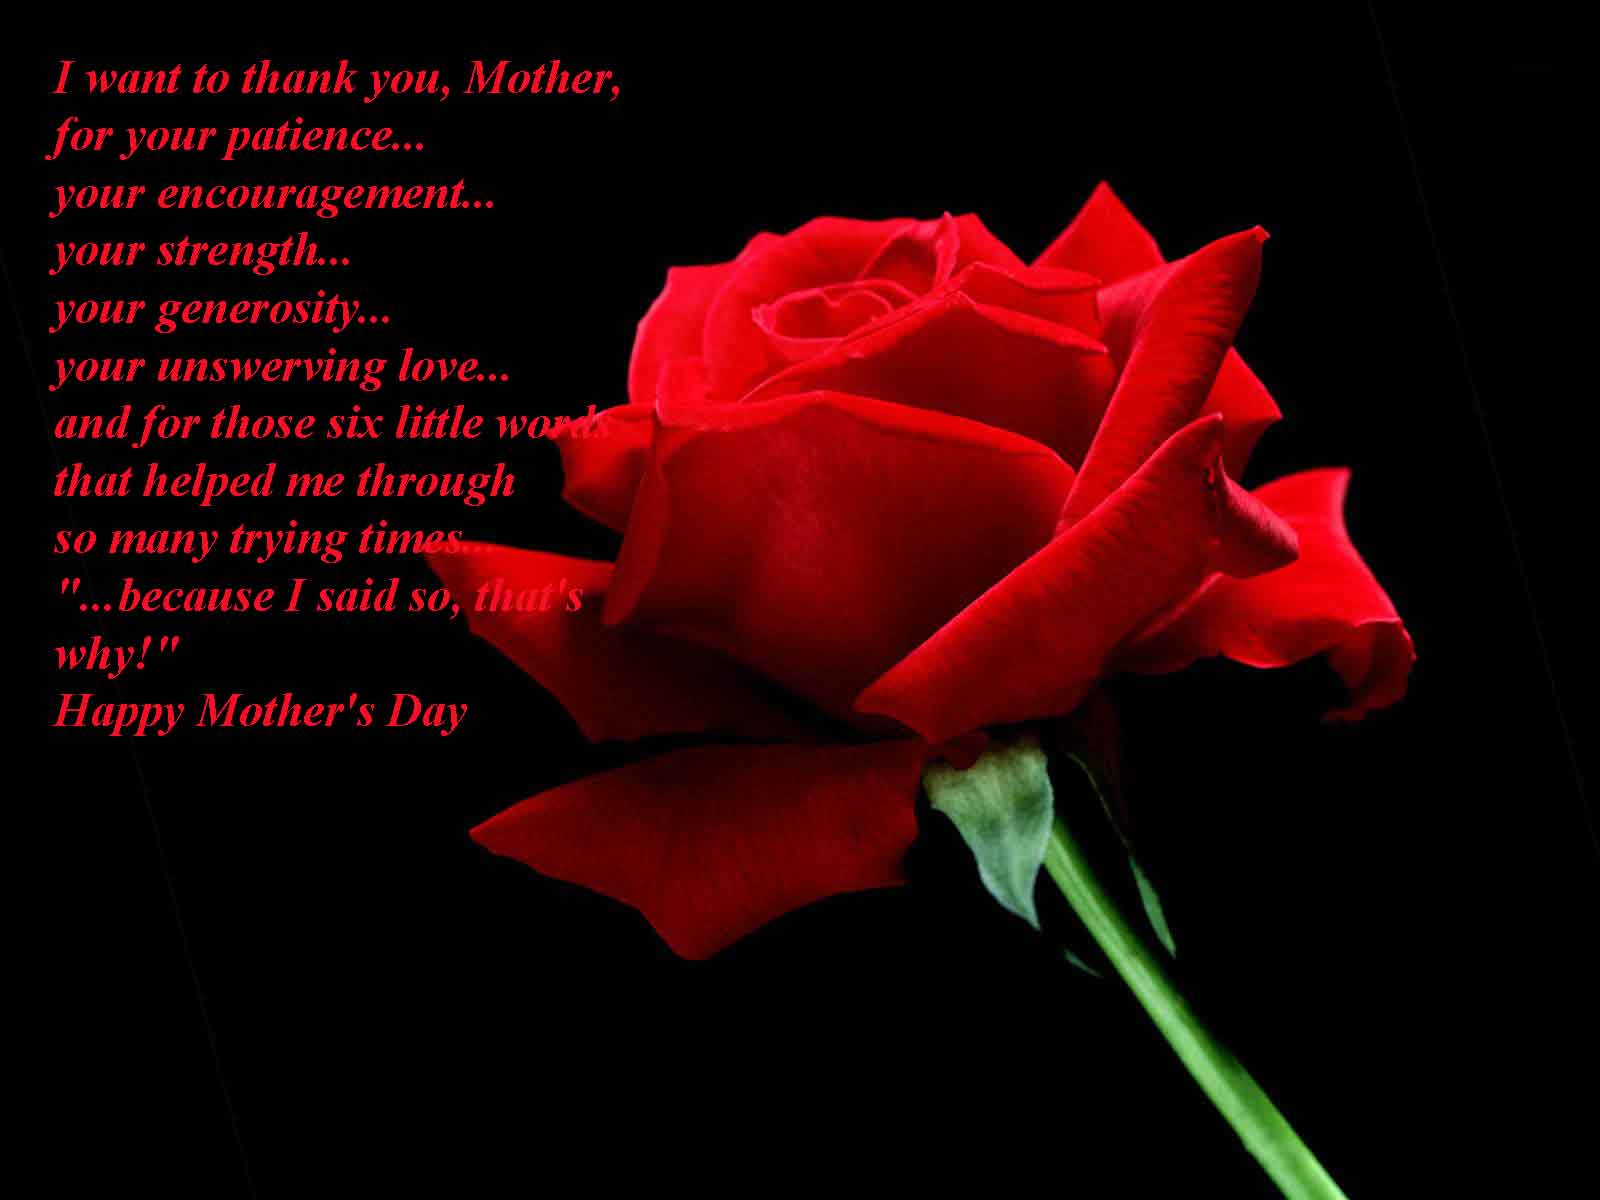 http://1.bp.blogspot.com/-mmUT-BfNi44/T5kBcWVBF2I/AAAAAAAADd4/UMaTj9Zqt1Q/s1600/Mothers-Day-Wishes-Greeting-Card.jpg